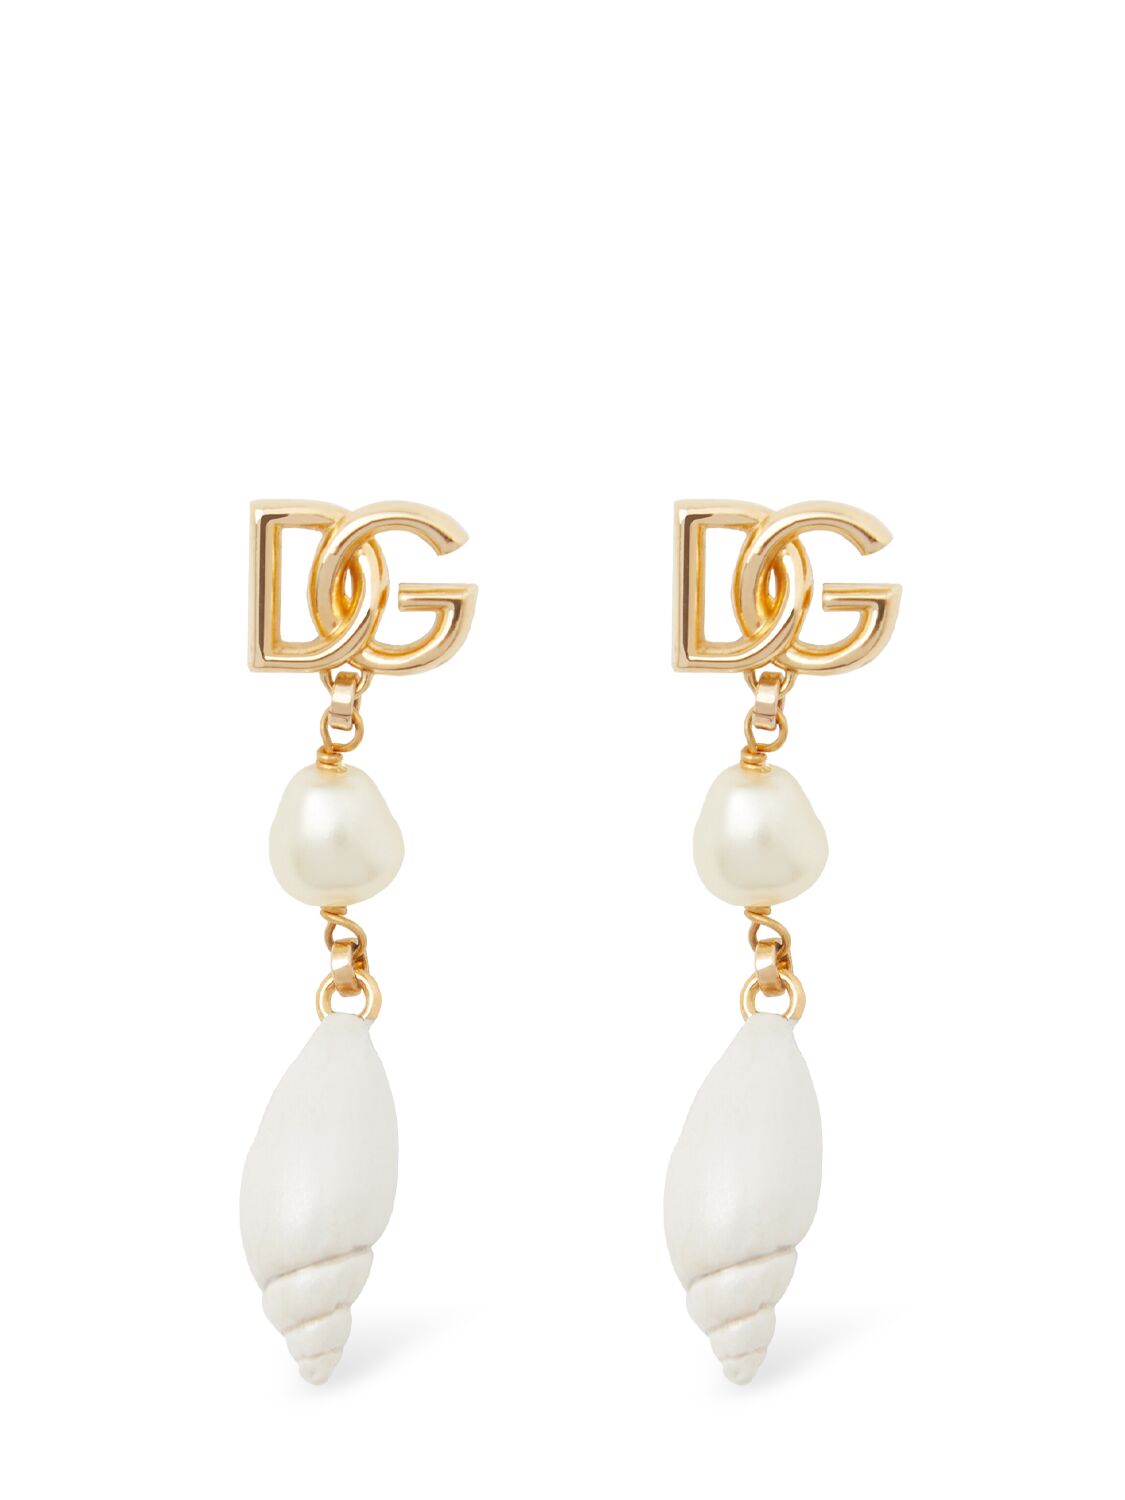 Dolce & Gabbana Dg Logo & Shell Charm Earrings In White,gold